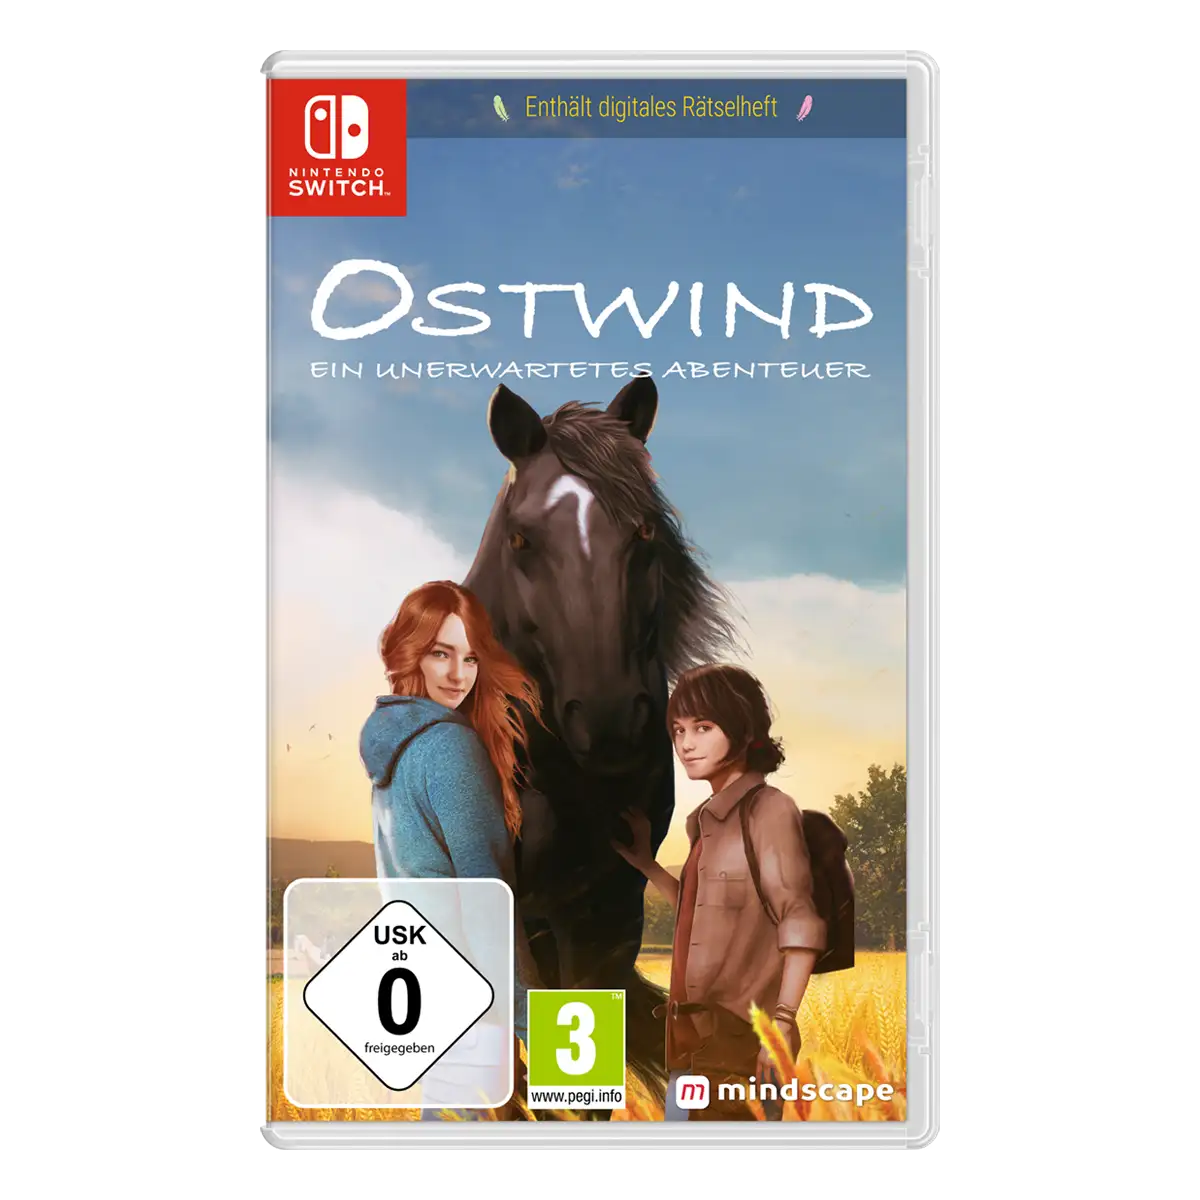 Ostwind: Ein unerwartetes Abenteuer (Switch) Cover